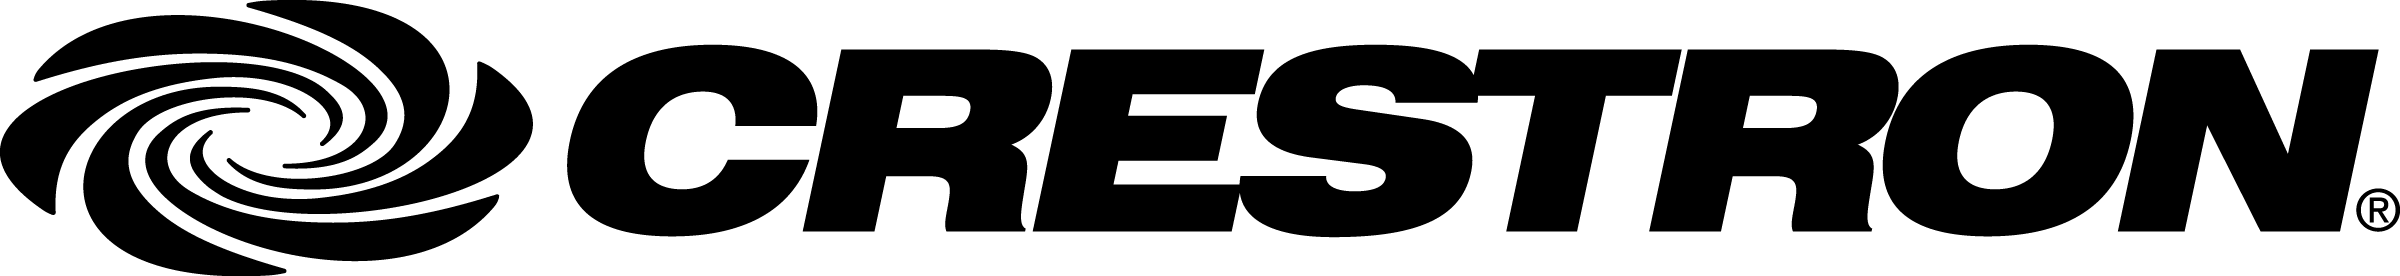 Crestron logo black.png